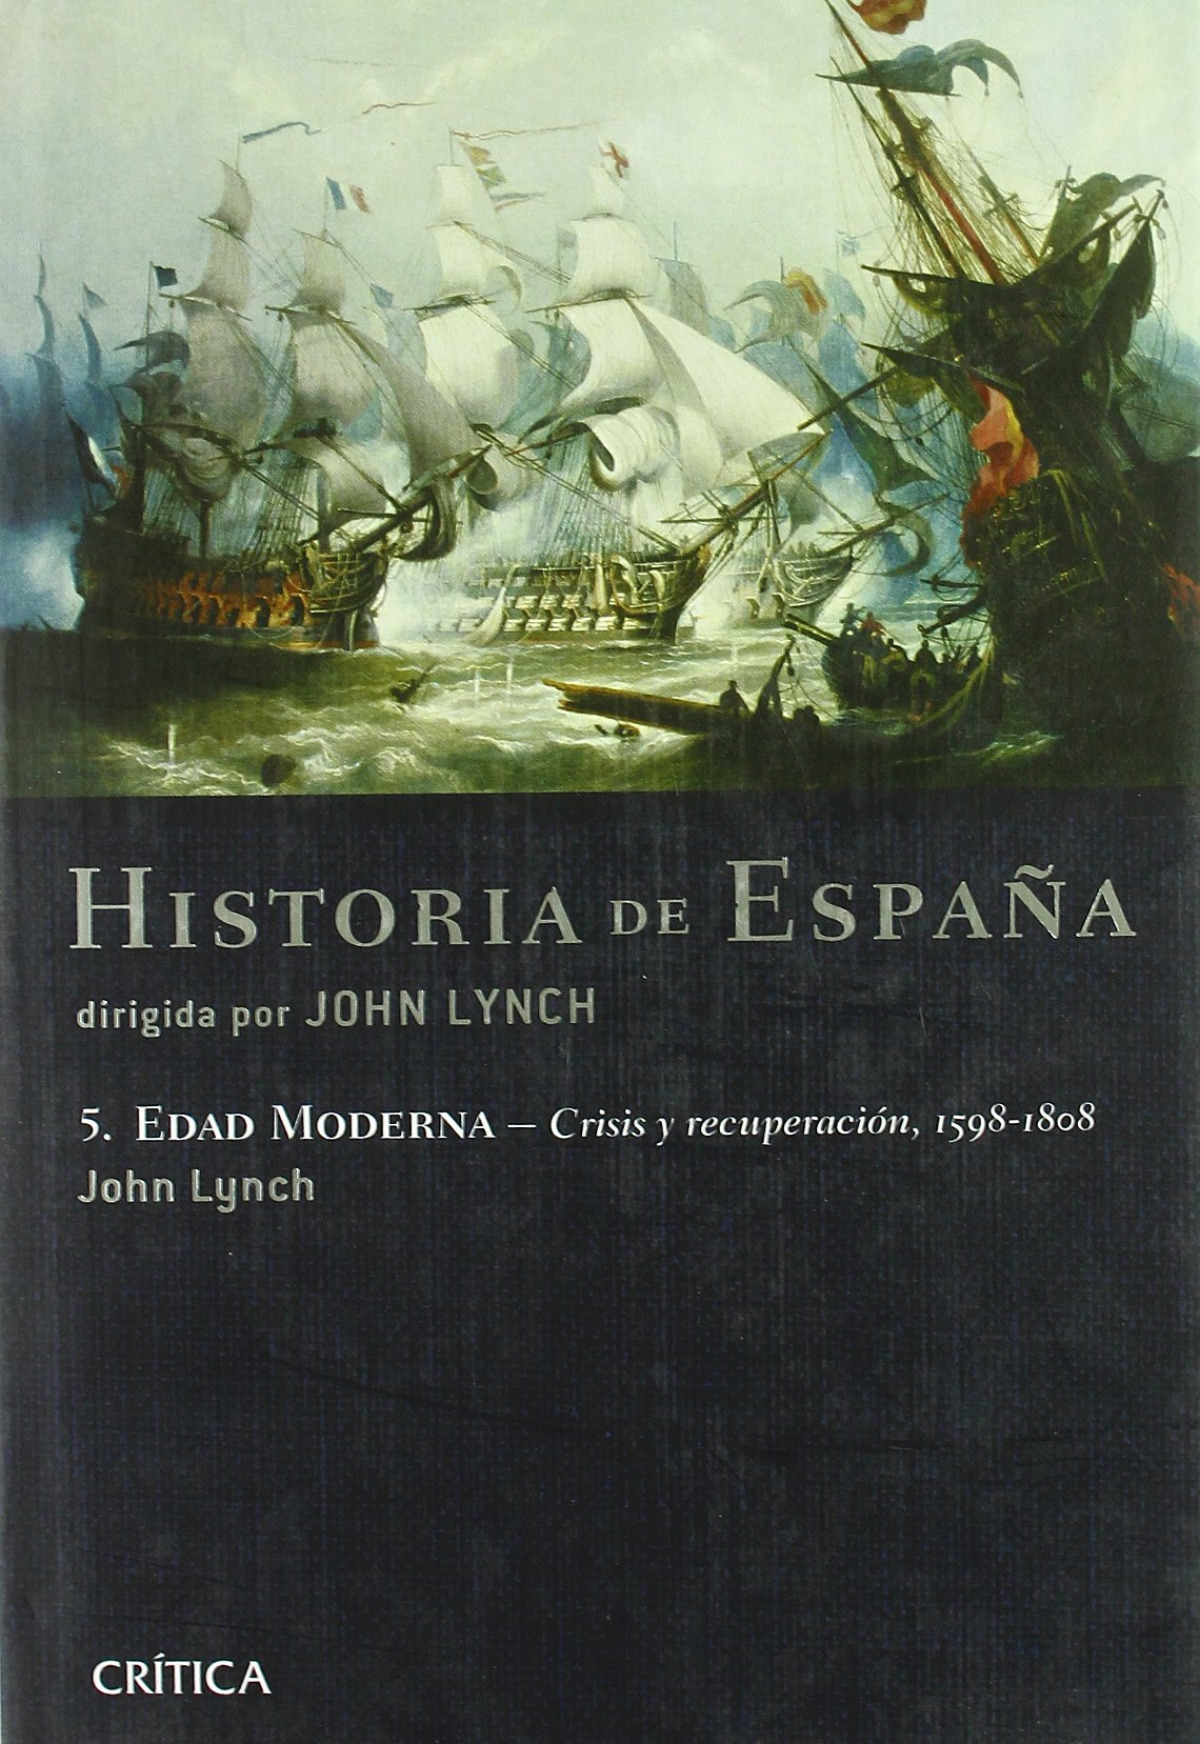 edad moderna:crisis y recuperación 1598-1808 - Lynch, John